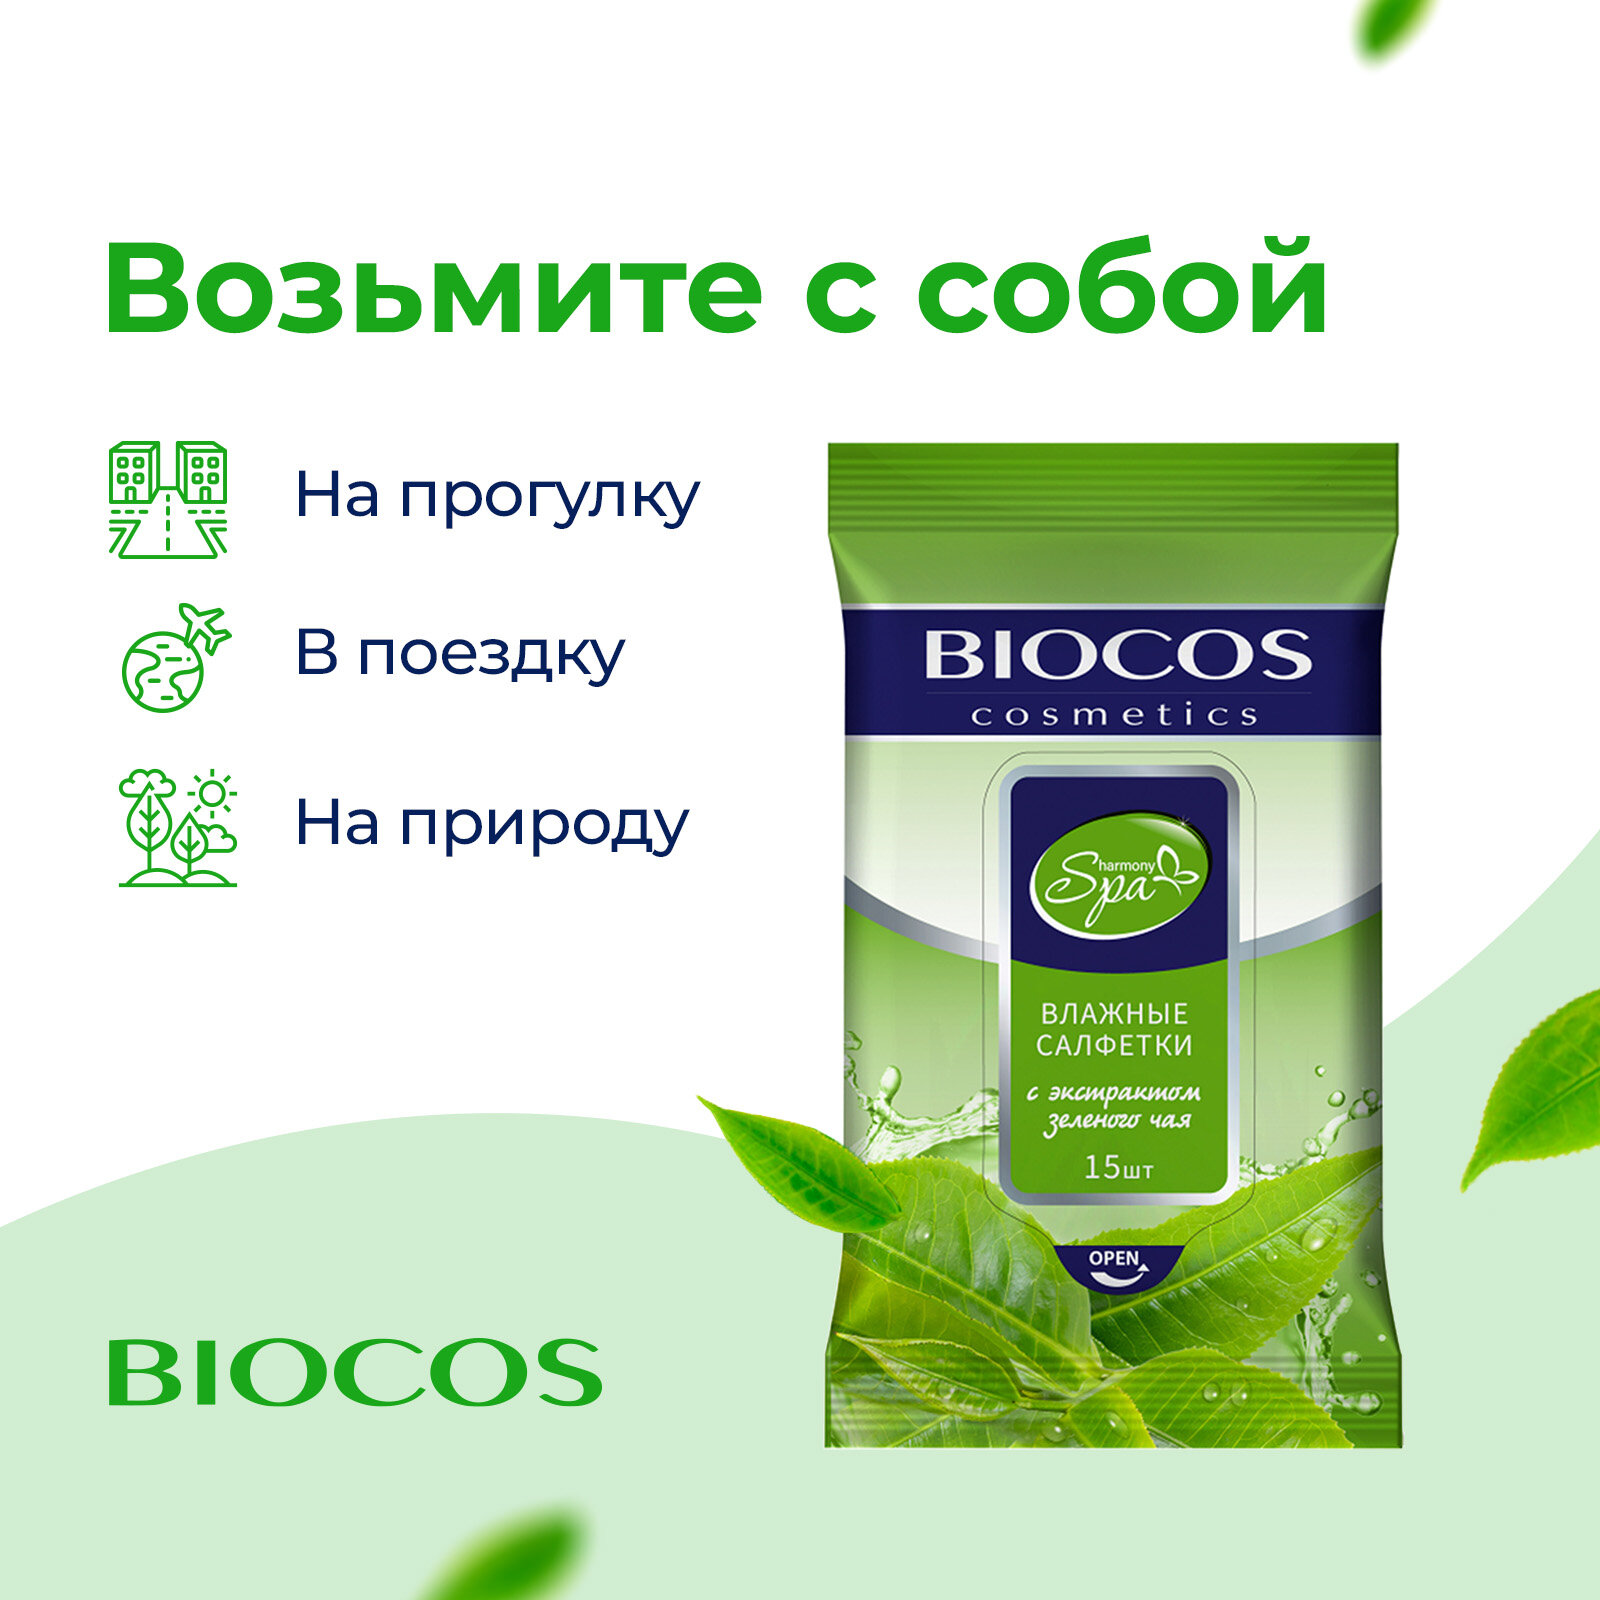 Влажные салфетки Biocos Spa Harmony с экстрактом зеленого чая для гигиены рук и тела, набор 60 штук